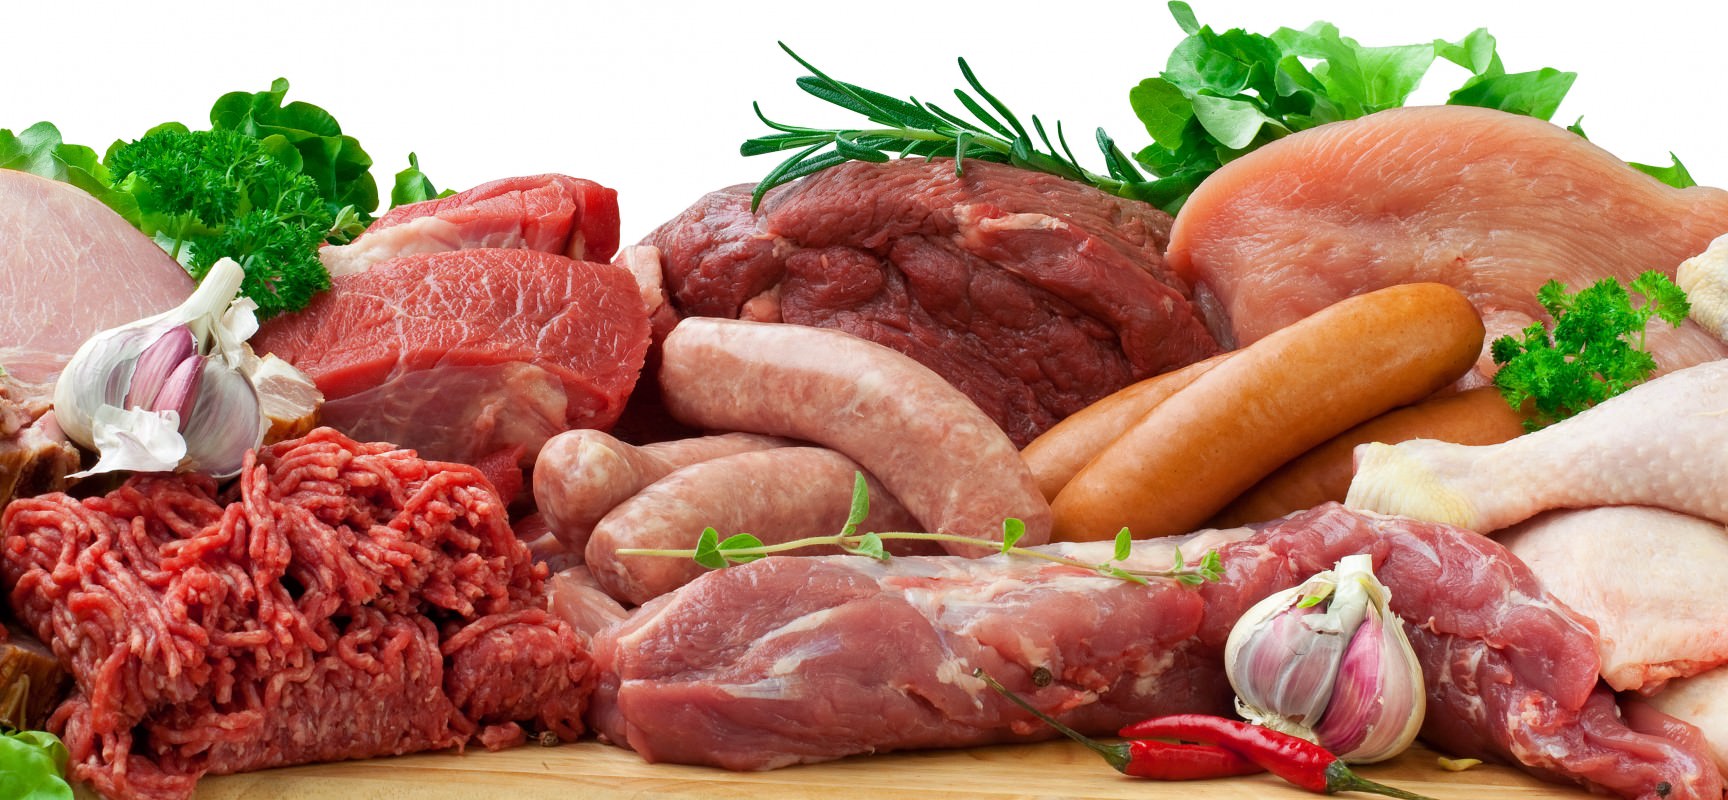 Мясо и пищевые мясные субпродукты